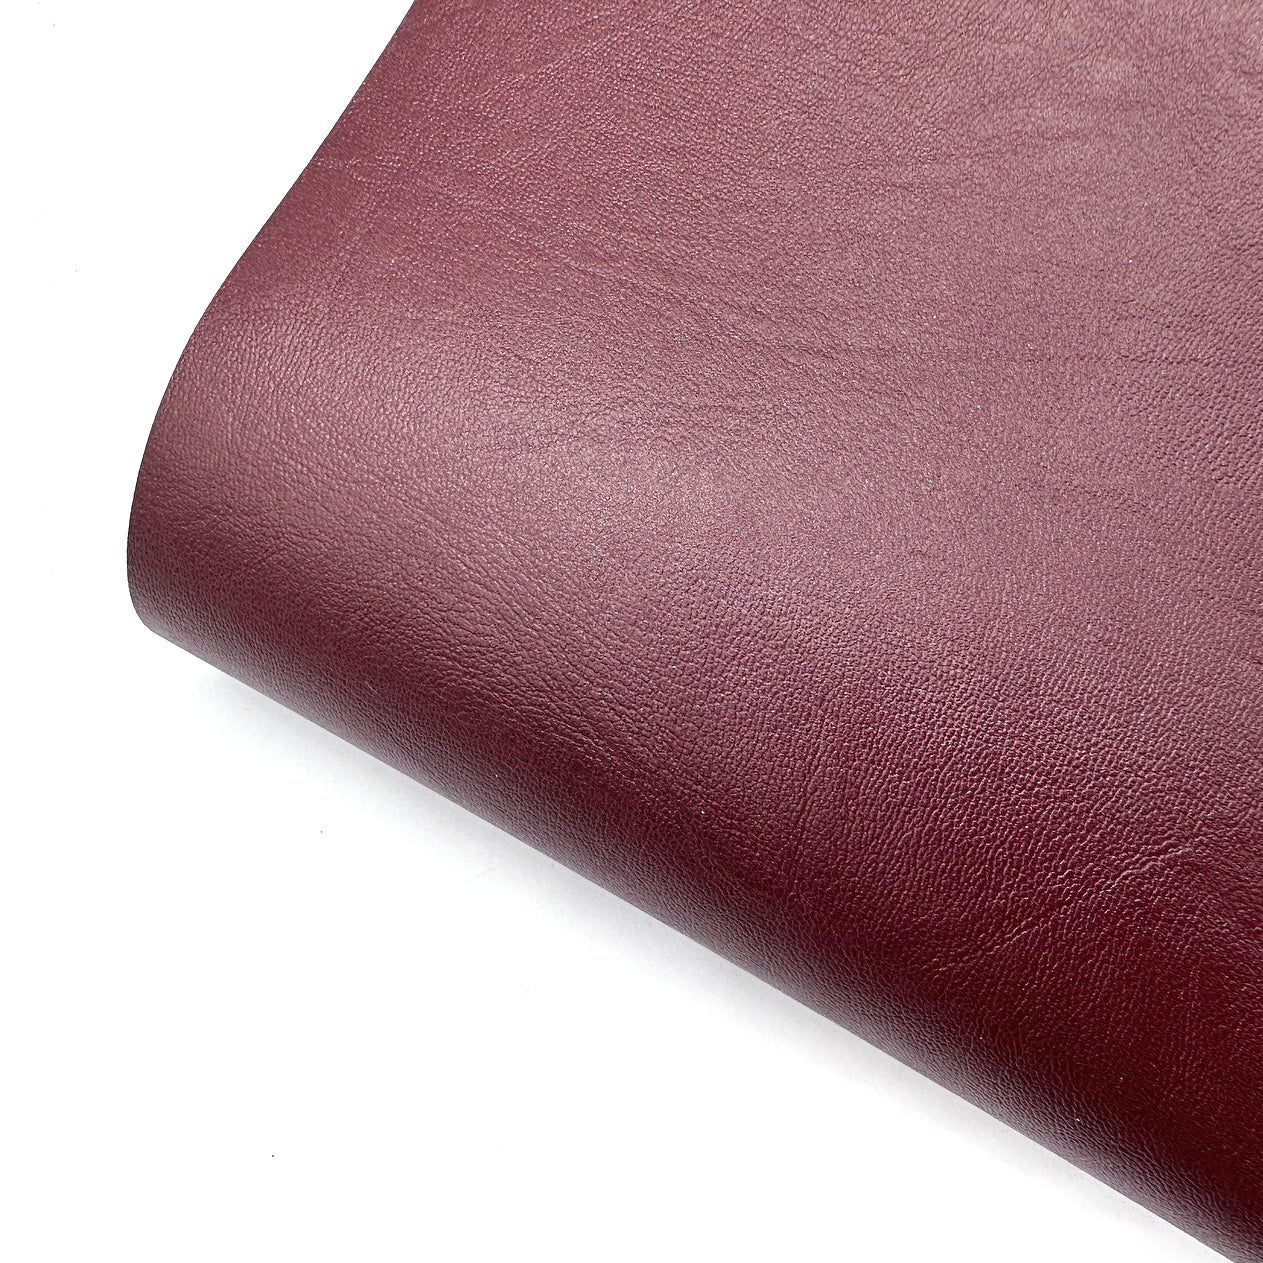 True Burgundy Core Colour Premium Faux Leather Fabric Sheets